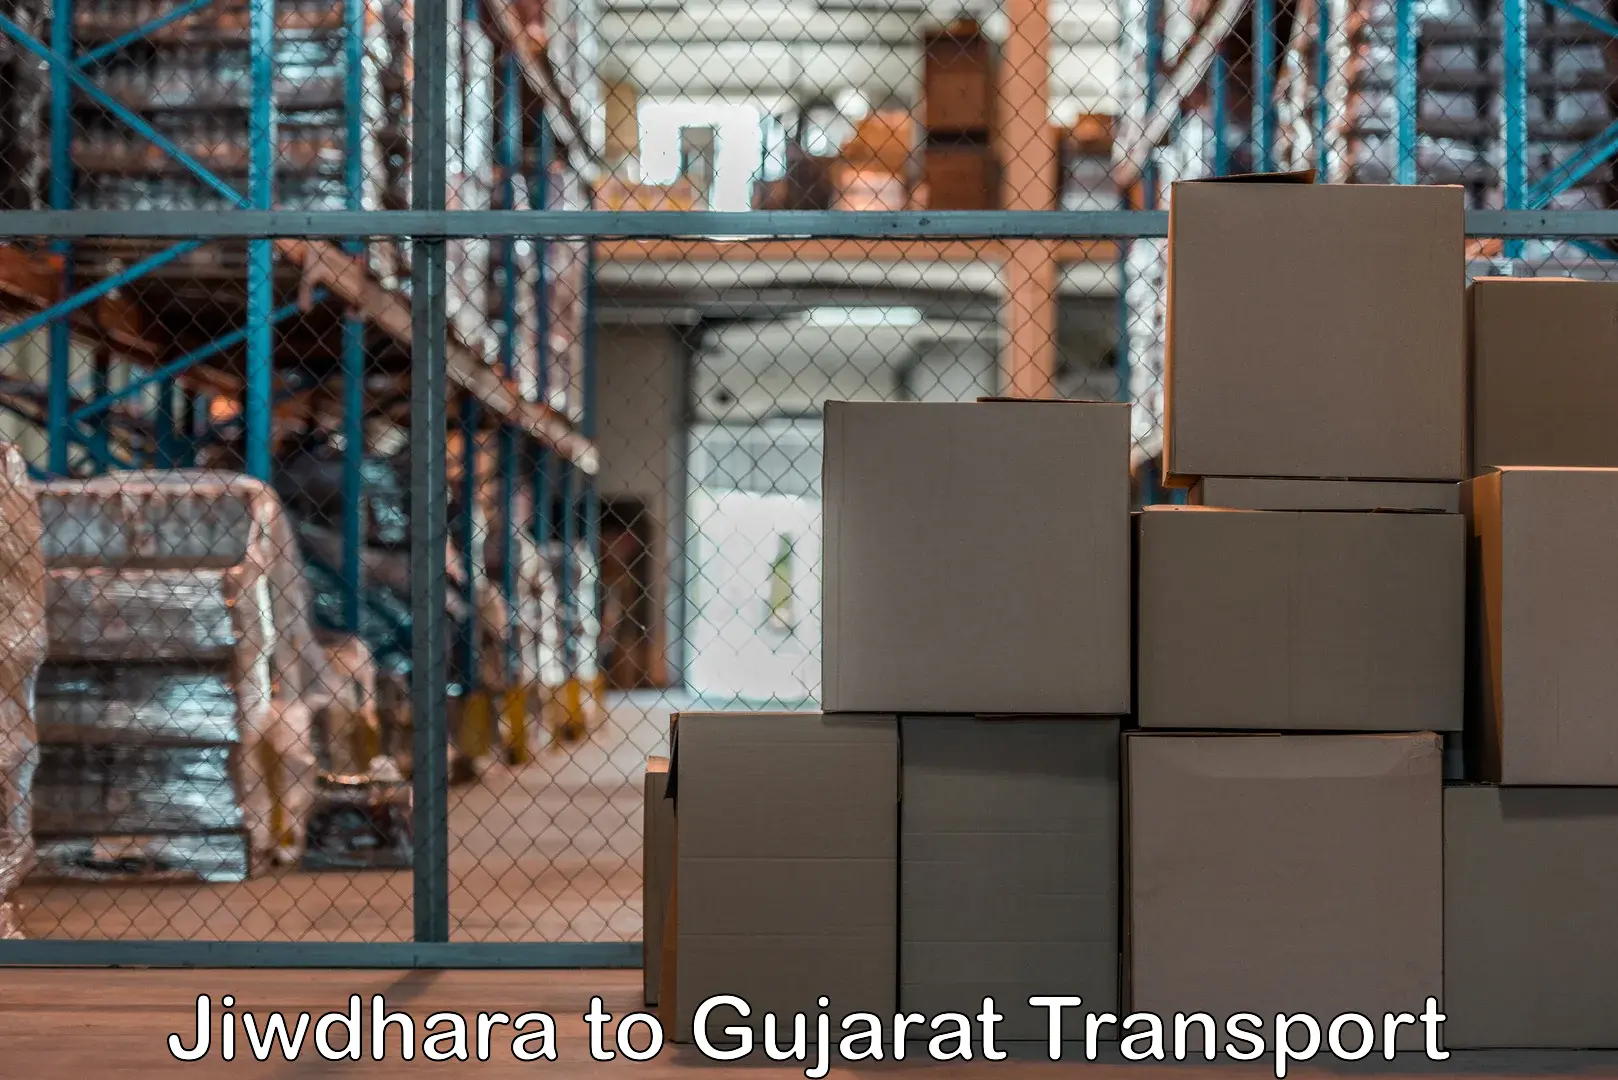 Container transport service Jiwdhara to Kalol Gujarat